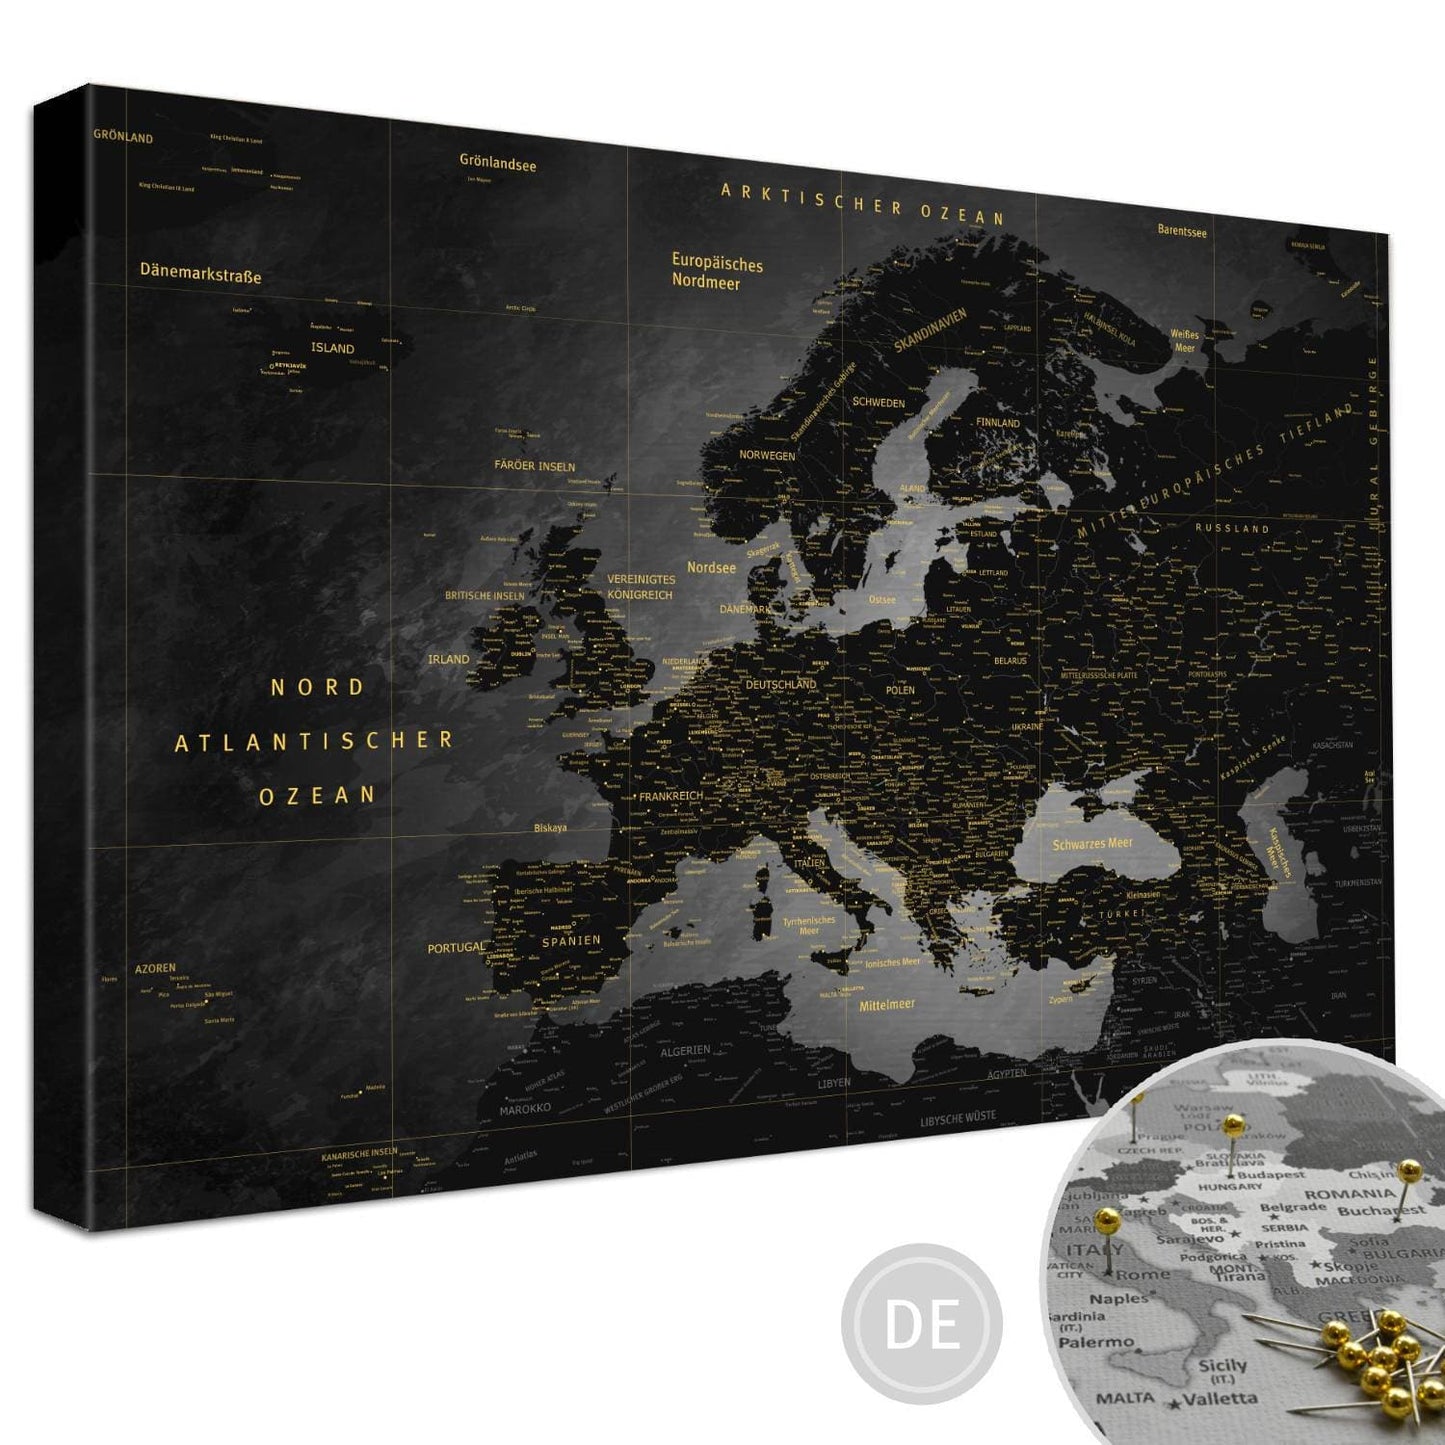 Leinwandbild - Europakarte Noir - Pinnwand, Deutsch|Canvas Art - Europe Map Noir - Pinboard, German